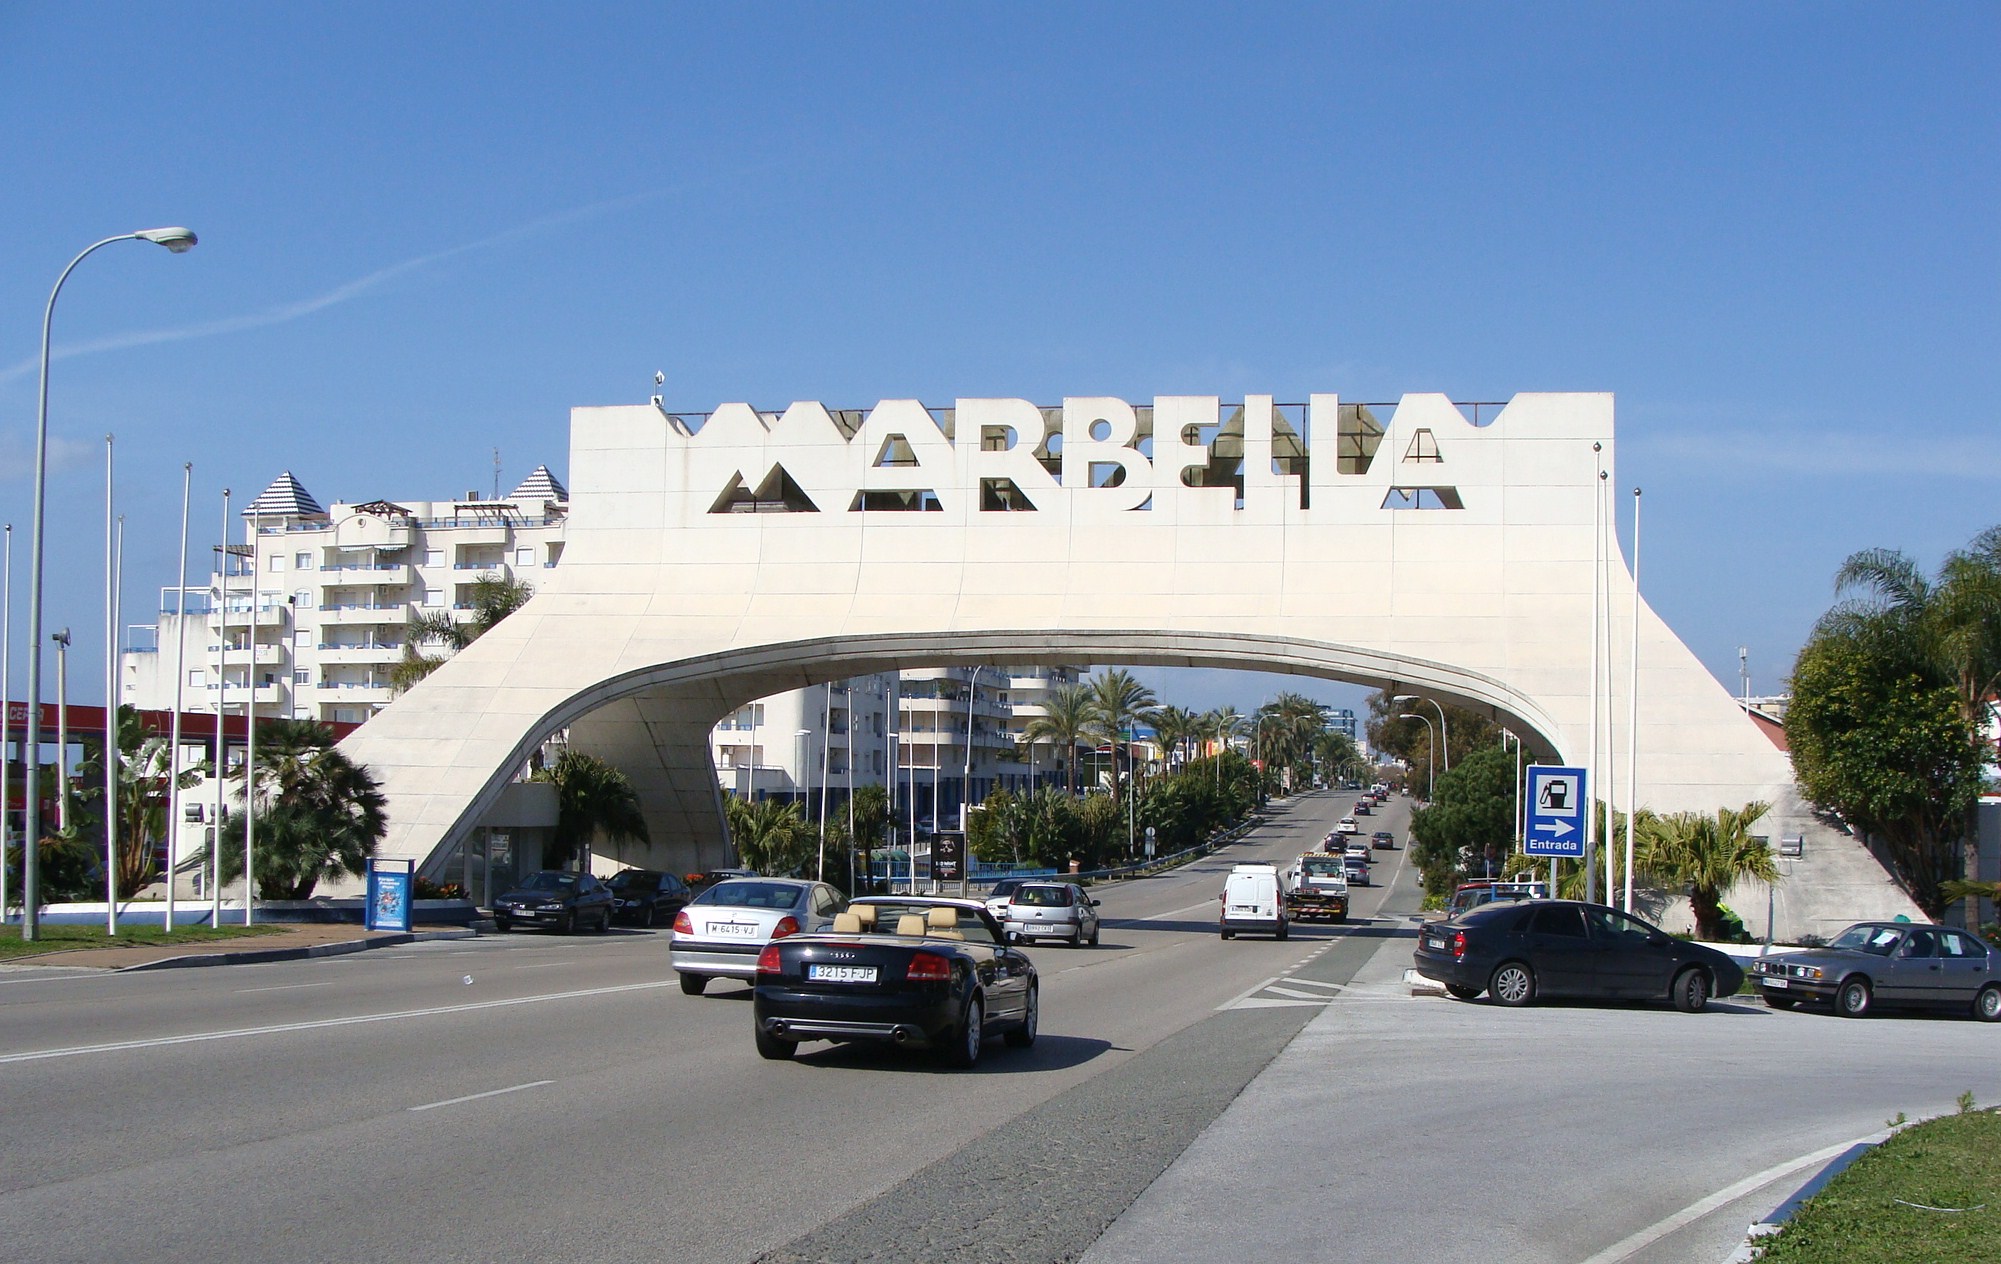 Intercambio de Idiomas Marbella